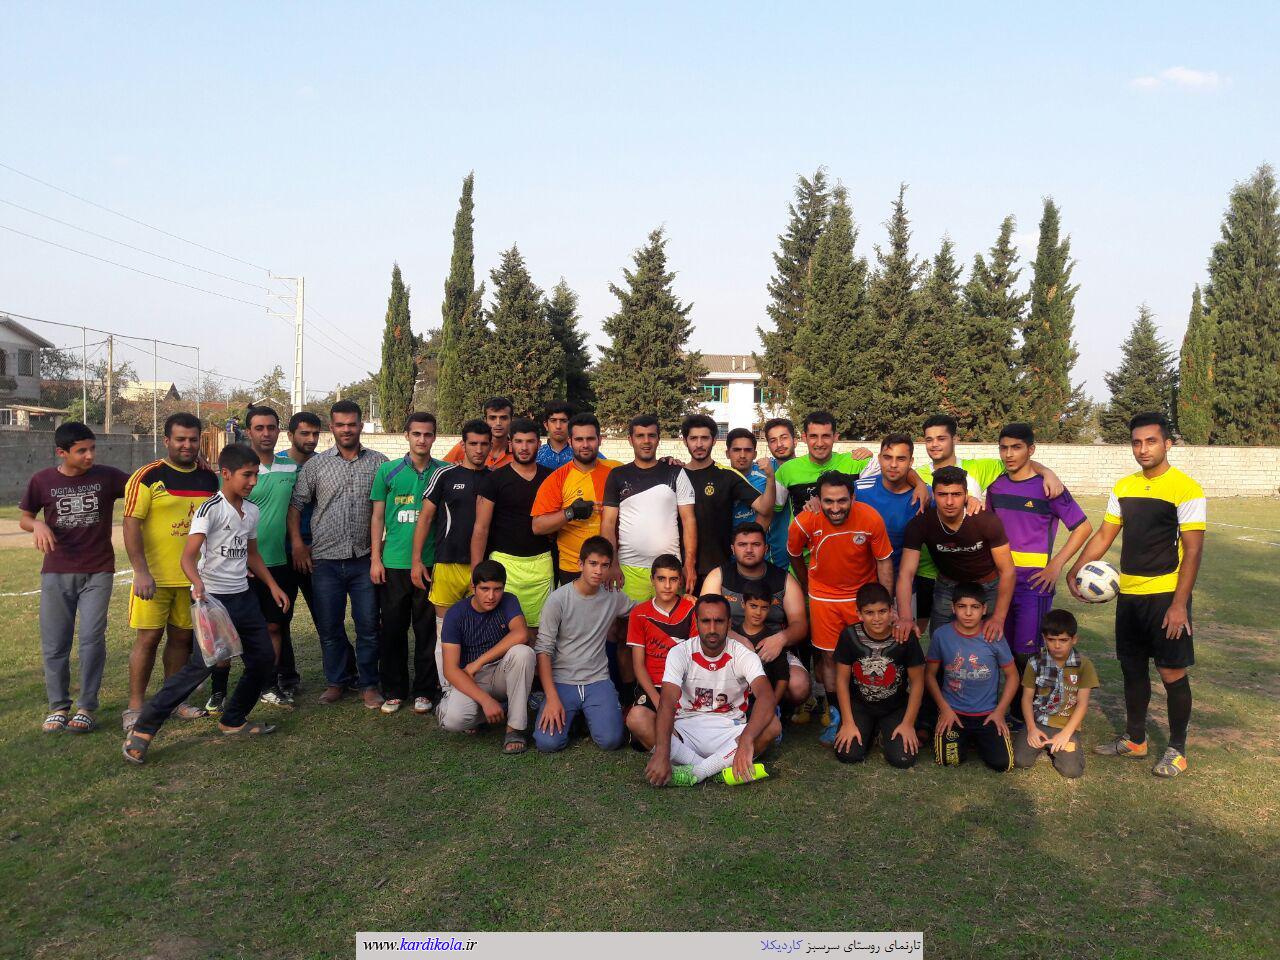  حضور جوانان و نوجوانان در روز 23 مهرماه در زمین فوتبال